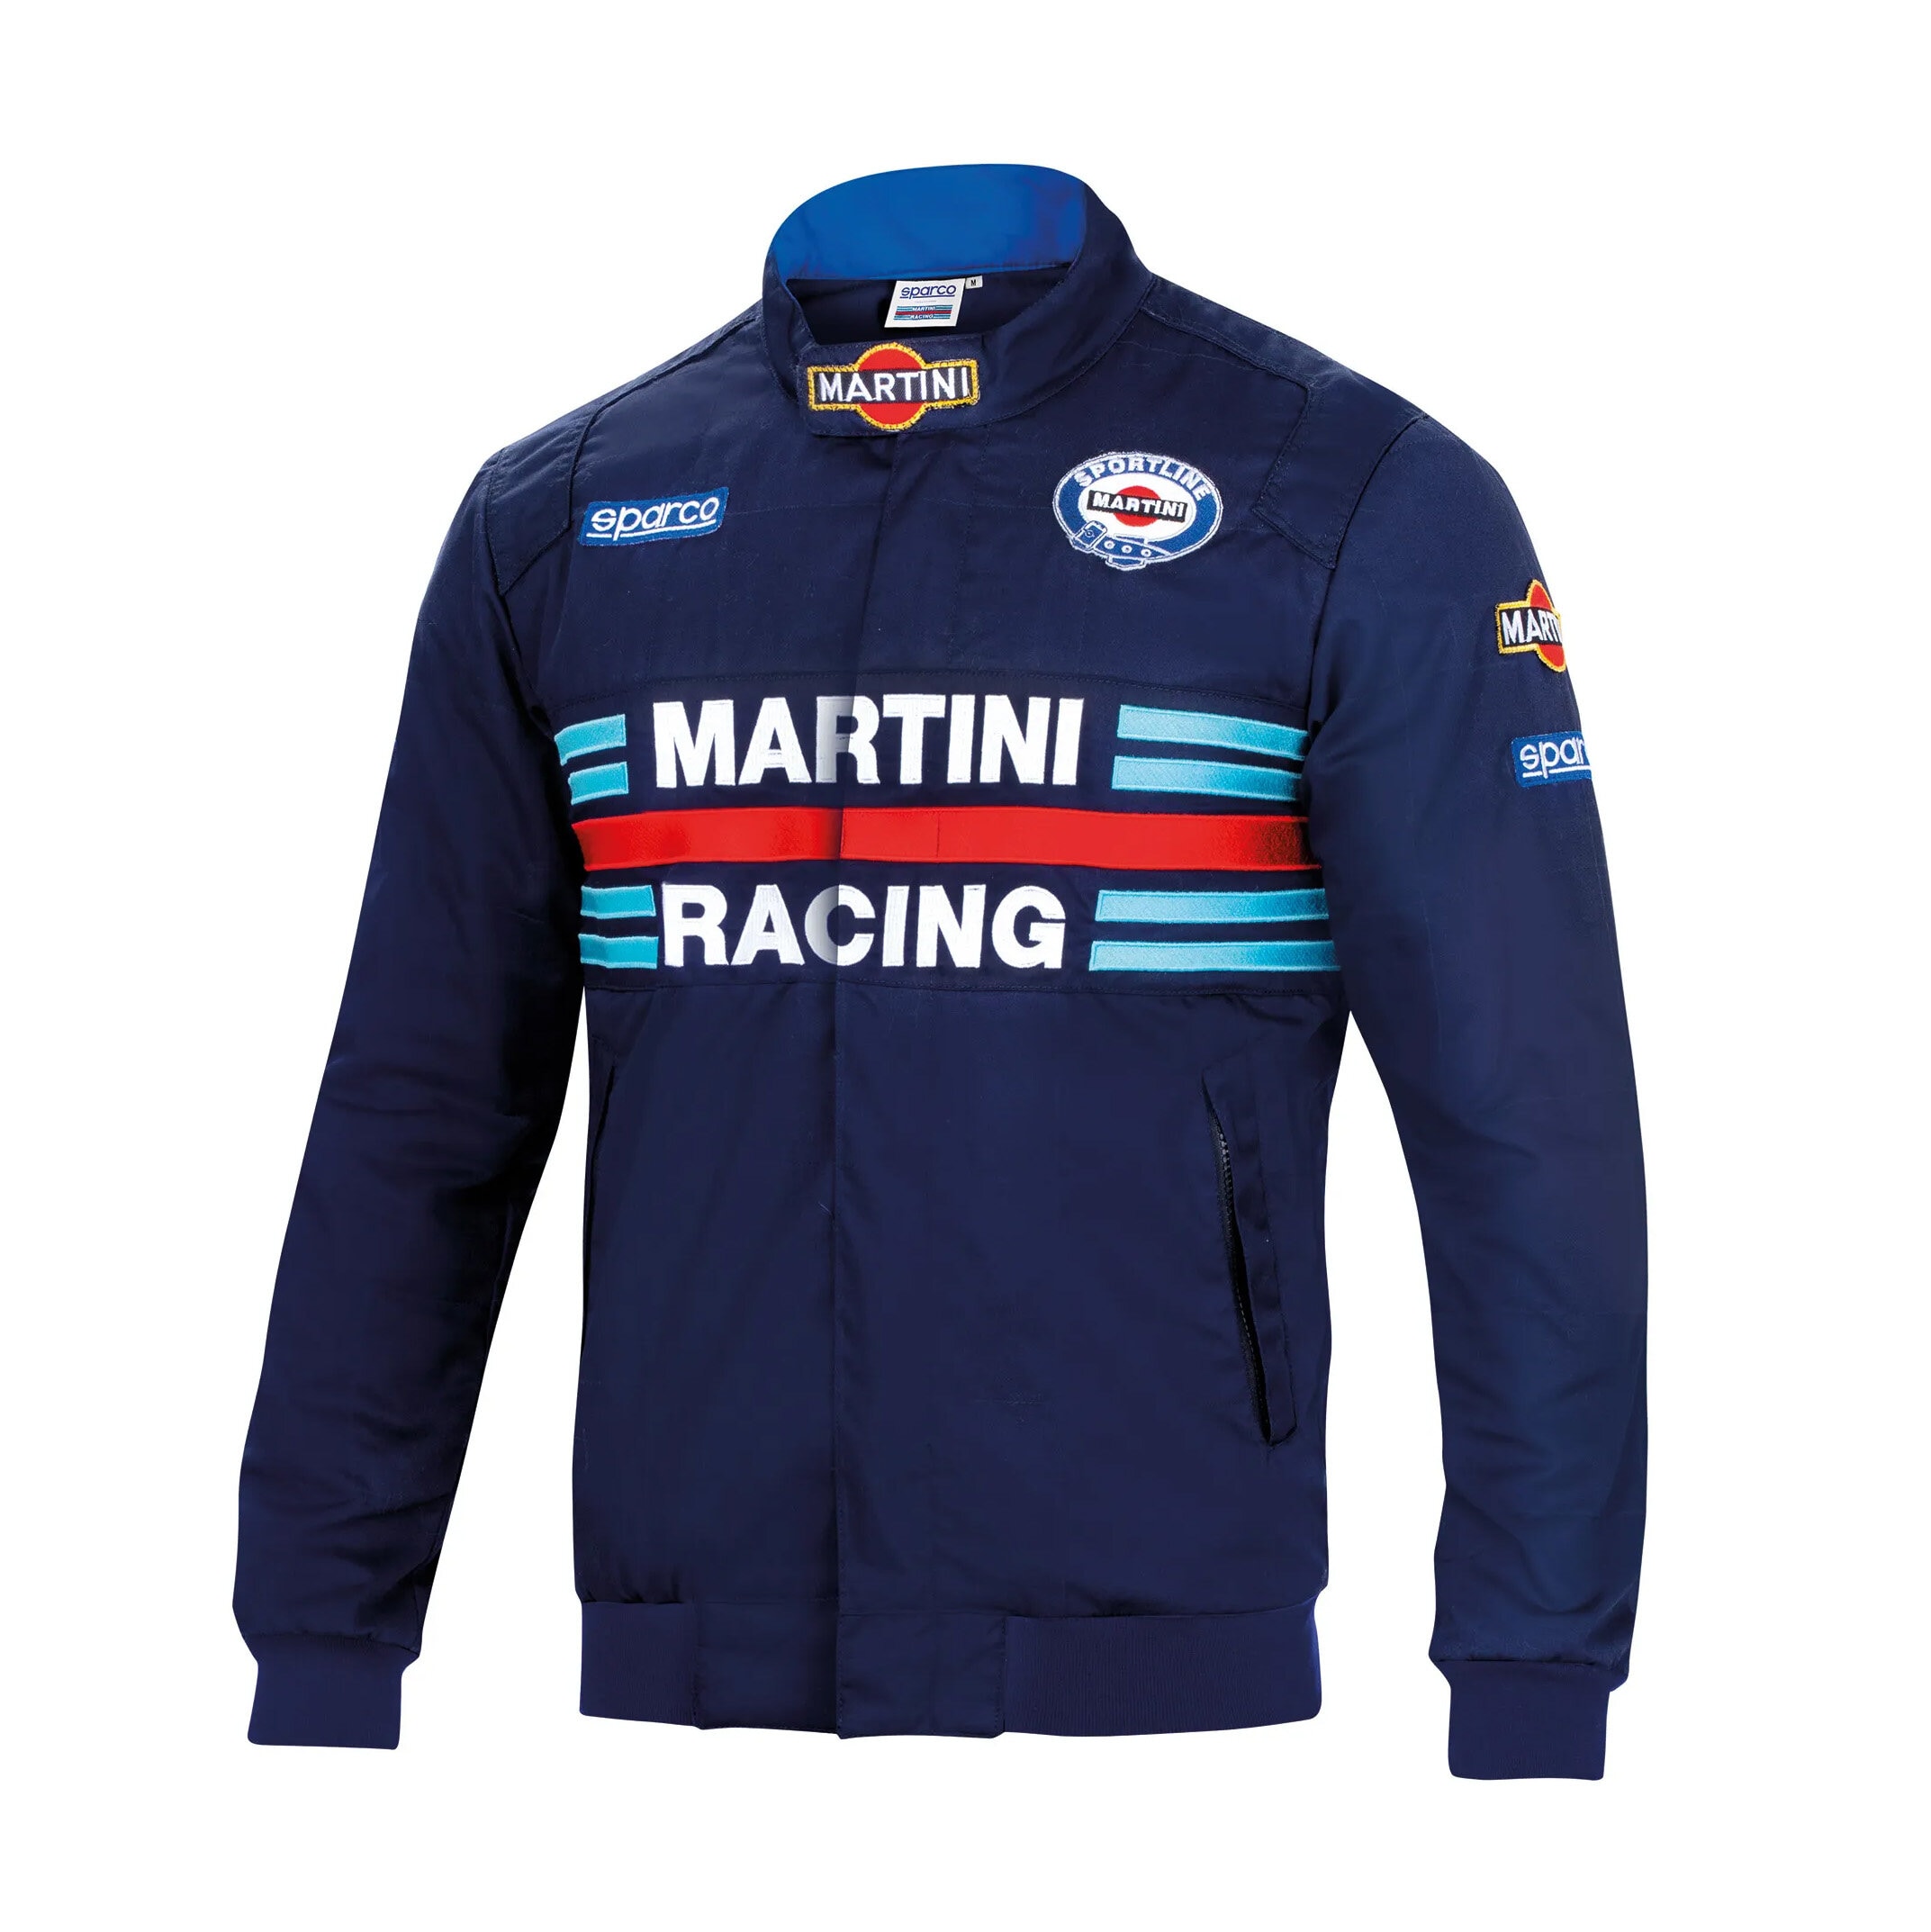 Jakke Martini Racing Bomber Blå